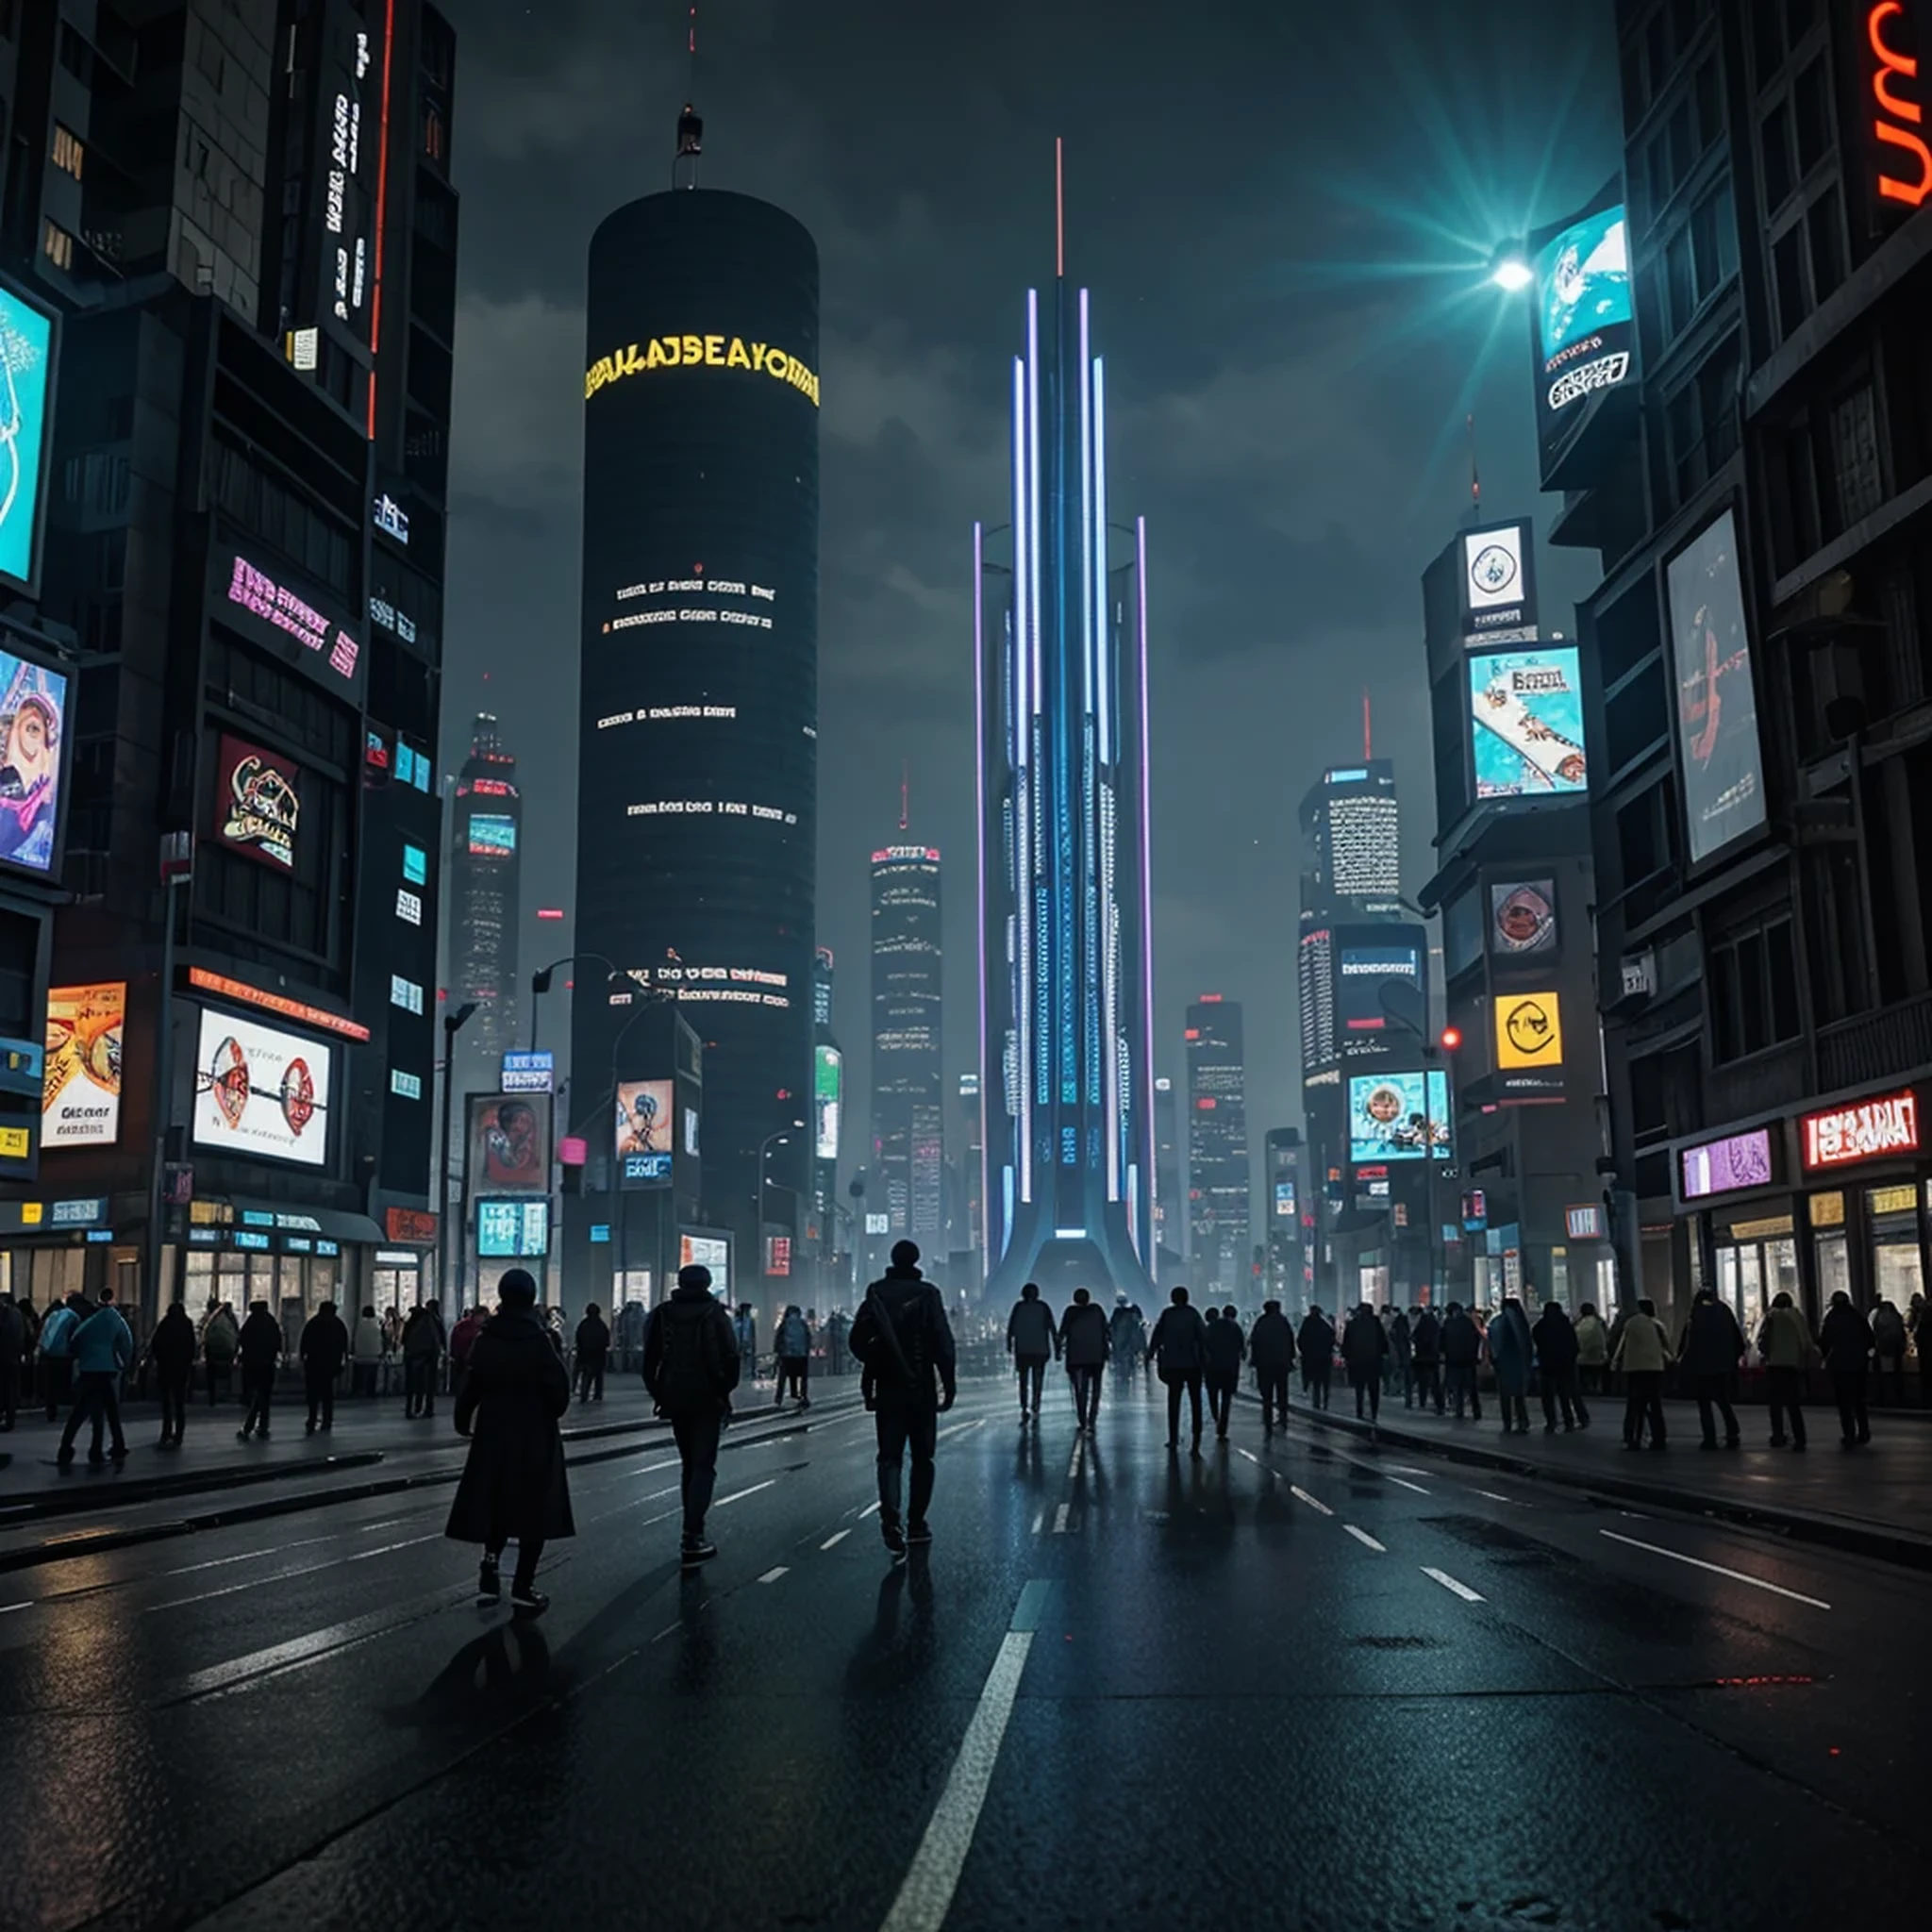 Menschen, die nachts in einer Stadt spazieren gehen, mit einem großen Glockenturm im Hintergrund, in a futuristic cyberpunk city, futuristisches Cyberpunk-Szenario, arstation und beeple hoch, in einer Fantasy-Science-Fiction-Stadt, sci-fi cyberpunk city street, busy cyberpunk metropolis, 3D-Rendering von Beeple, filmischer Beeple, cyberpunk city street, im Stil von Beeple